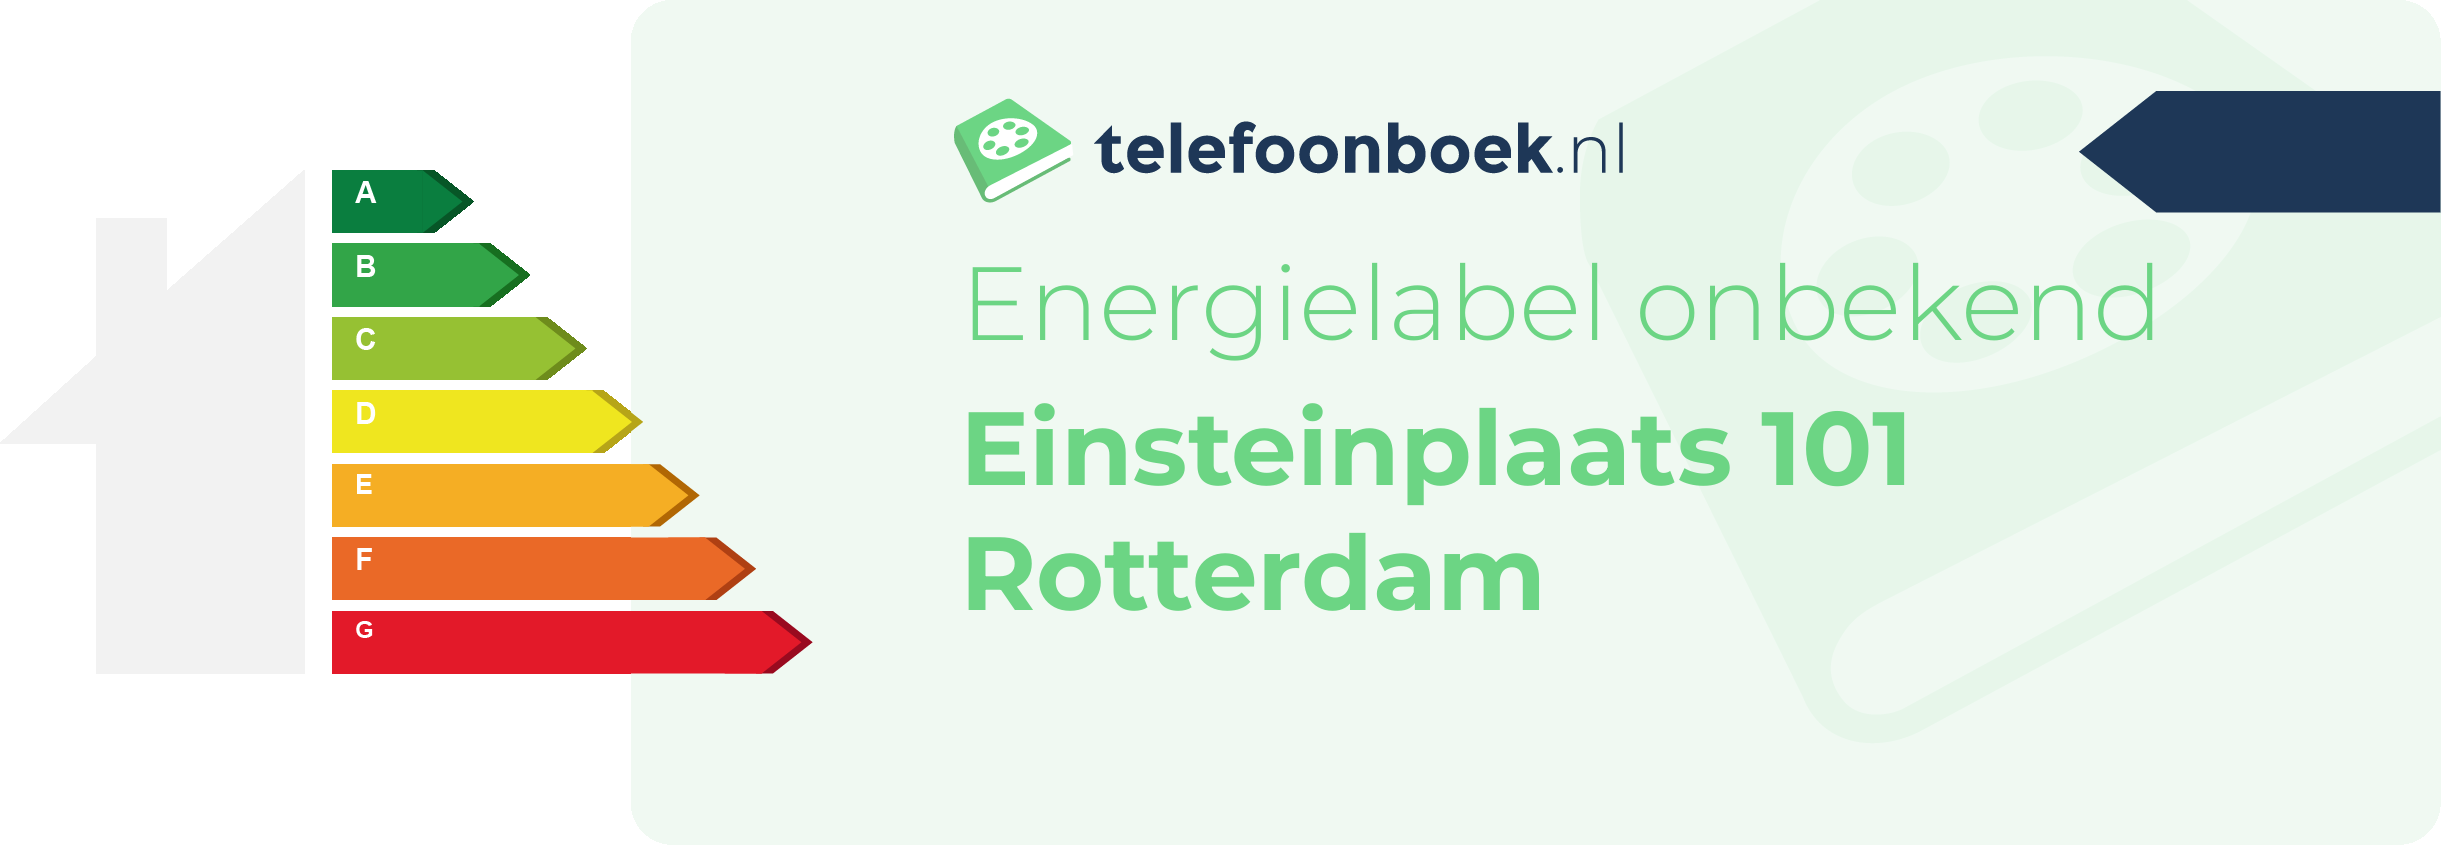 Energielabel Einsteinplaats 101 Rotterdam